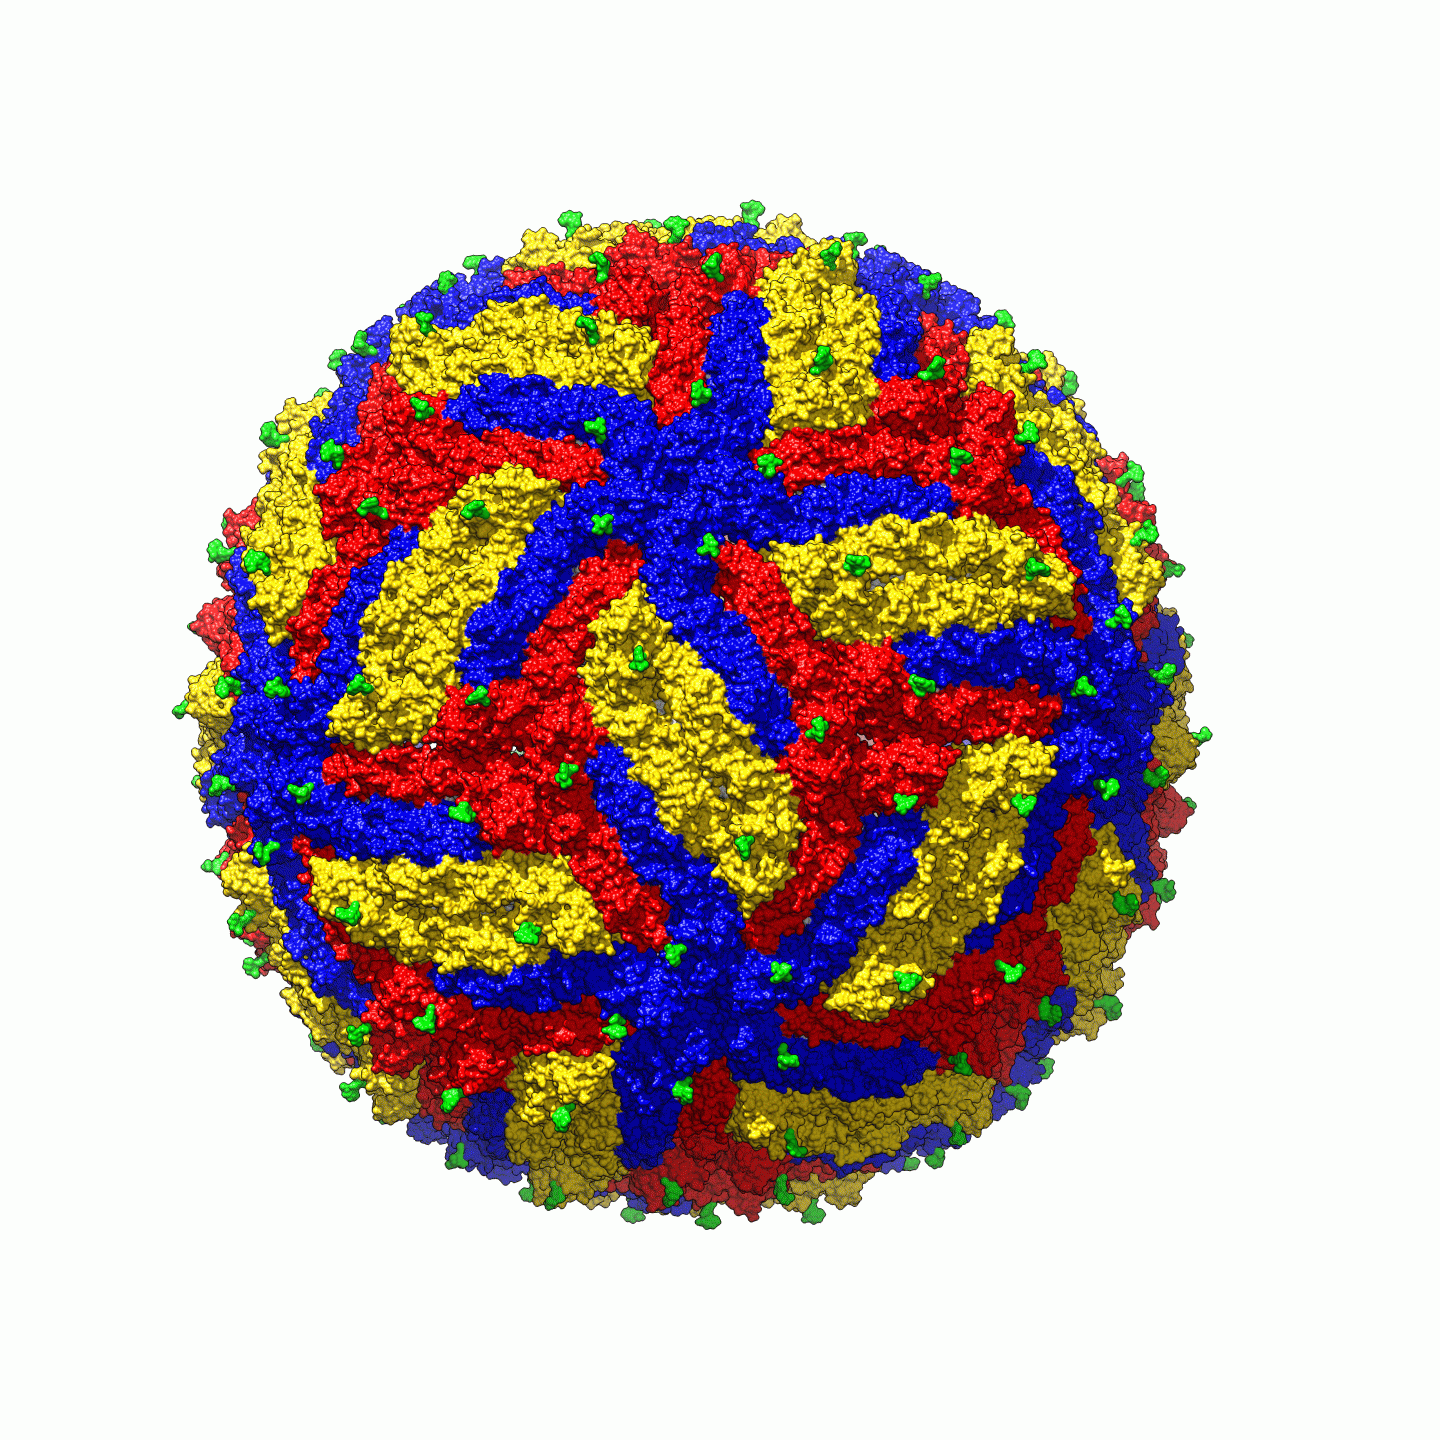 The structure of Zika virus.